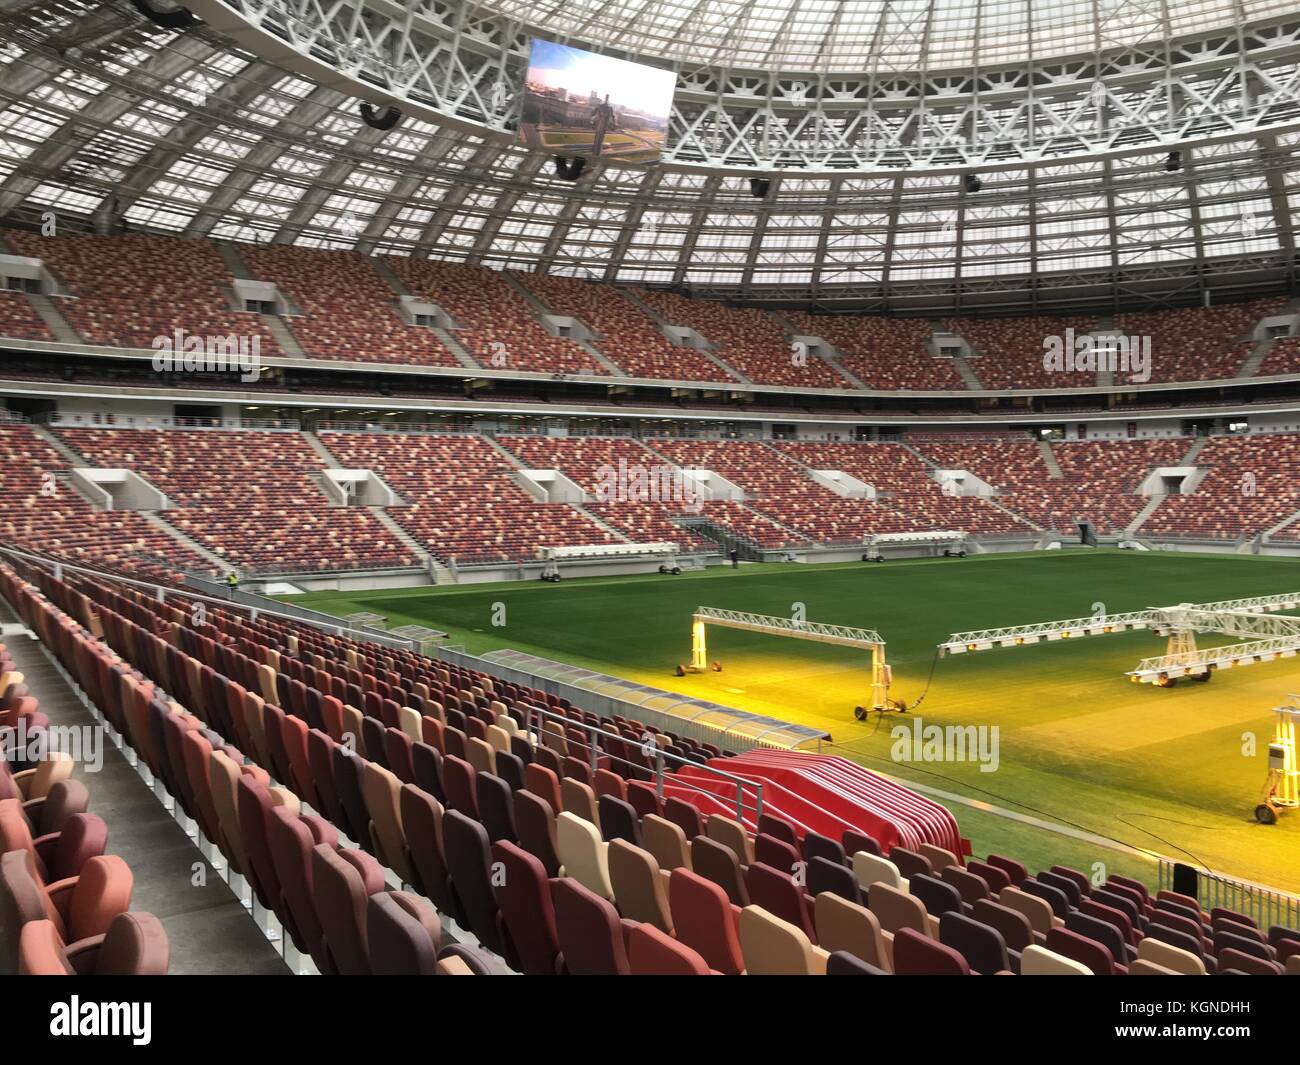 Una vista del luzhniki stadium di Mosca, Russia, 28 agosto 2017. La luzhniki  è il più importante stadio dei mondiali di calcio 2018 in Russia. Dal 2013  è stato ampiamente rinnovato. Questo